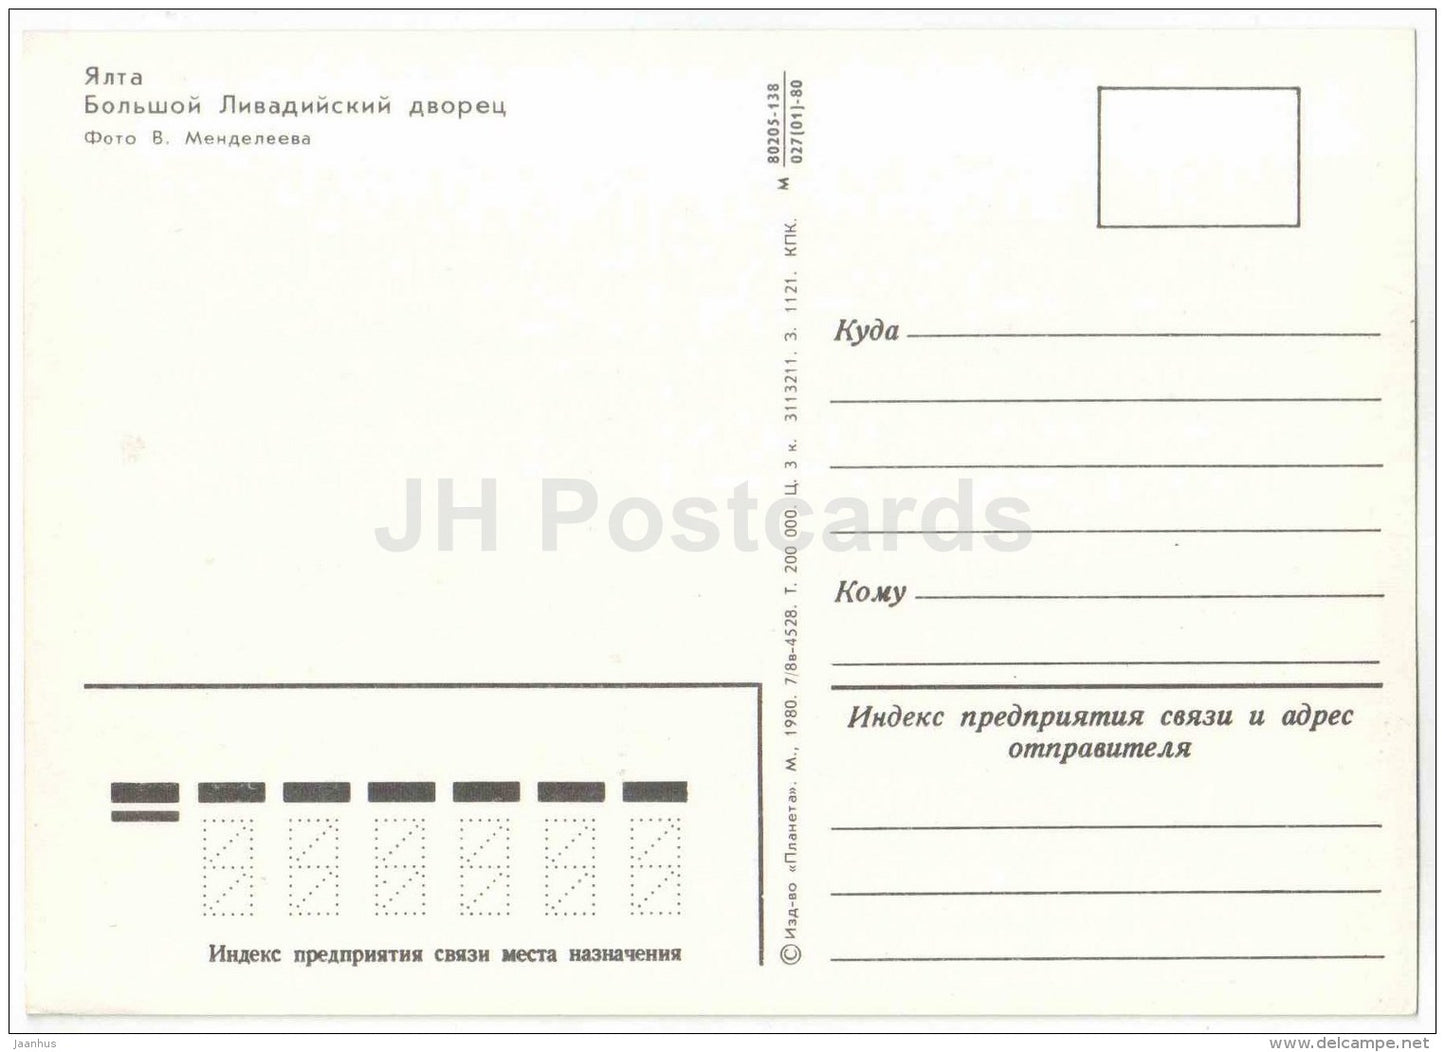 Grand Livadia Palace - Yalta - Crimea - 1980 - Ukraine USSR - unused - JH Postcards